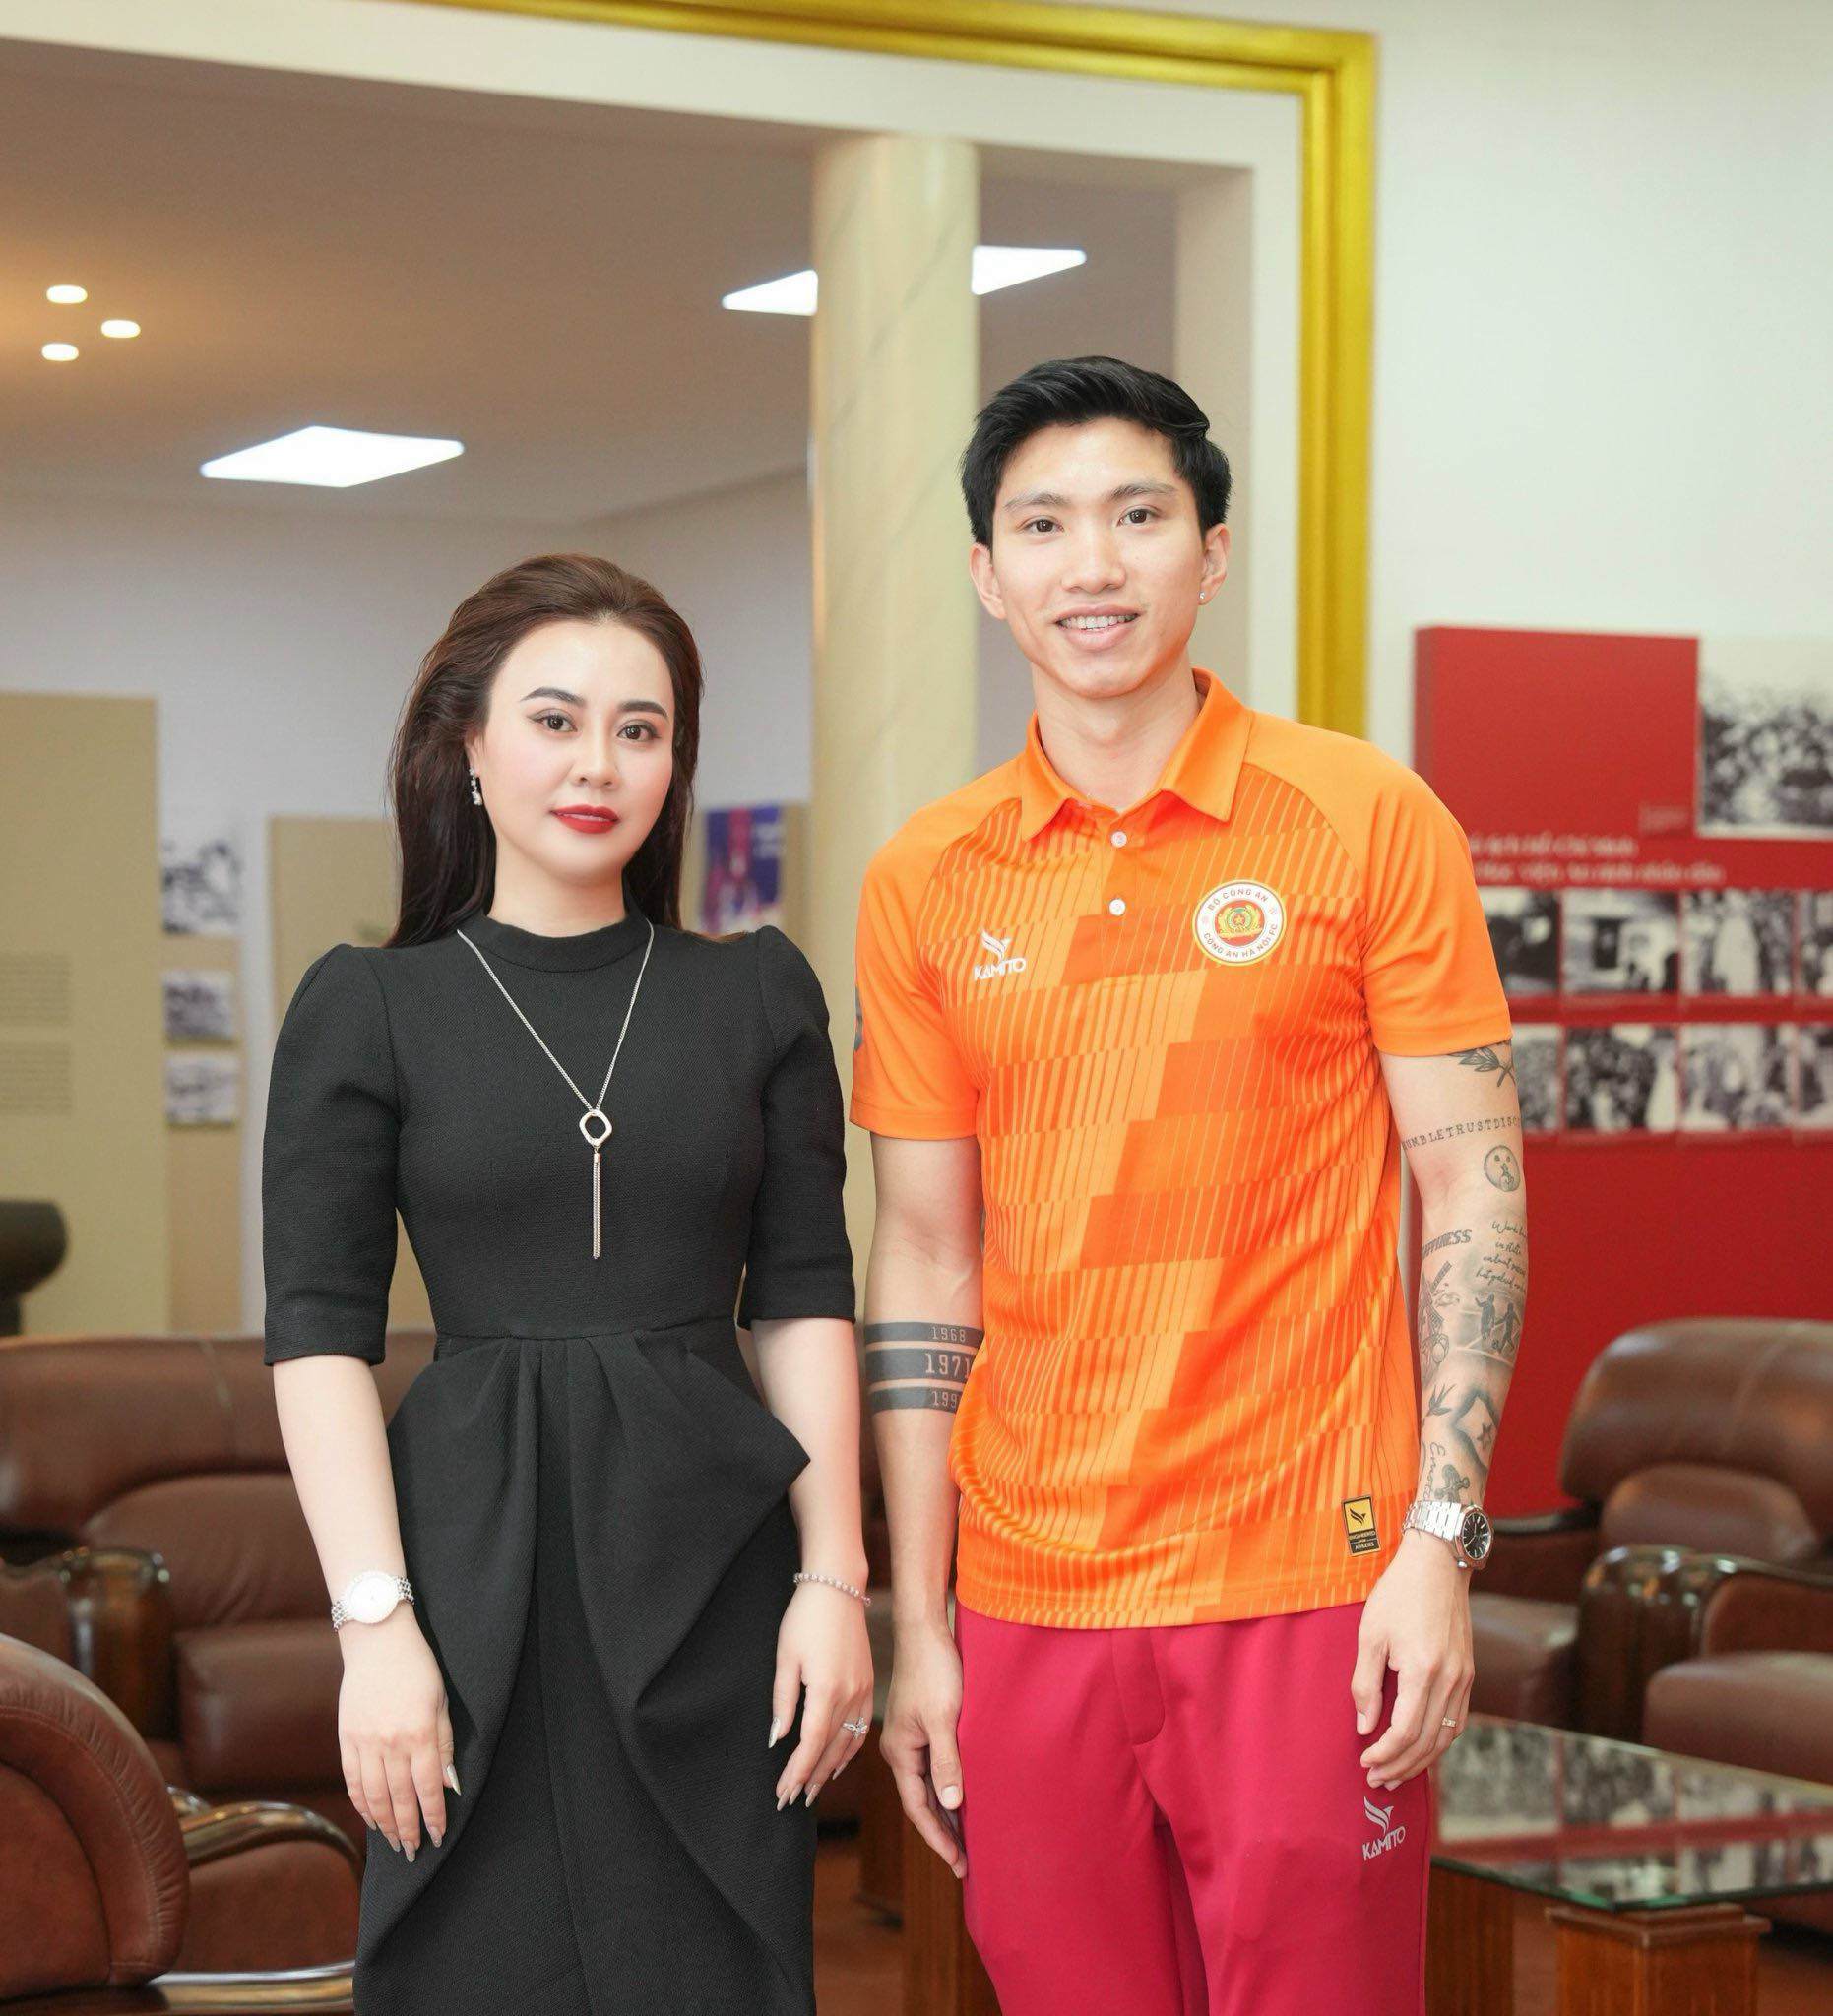 Hoa hậu Phan Kim Oanh thanh lịch tại lễ khai mạc bóng đá - 3